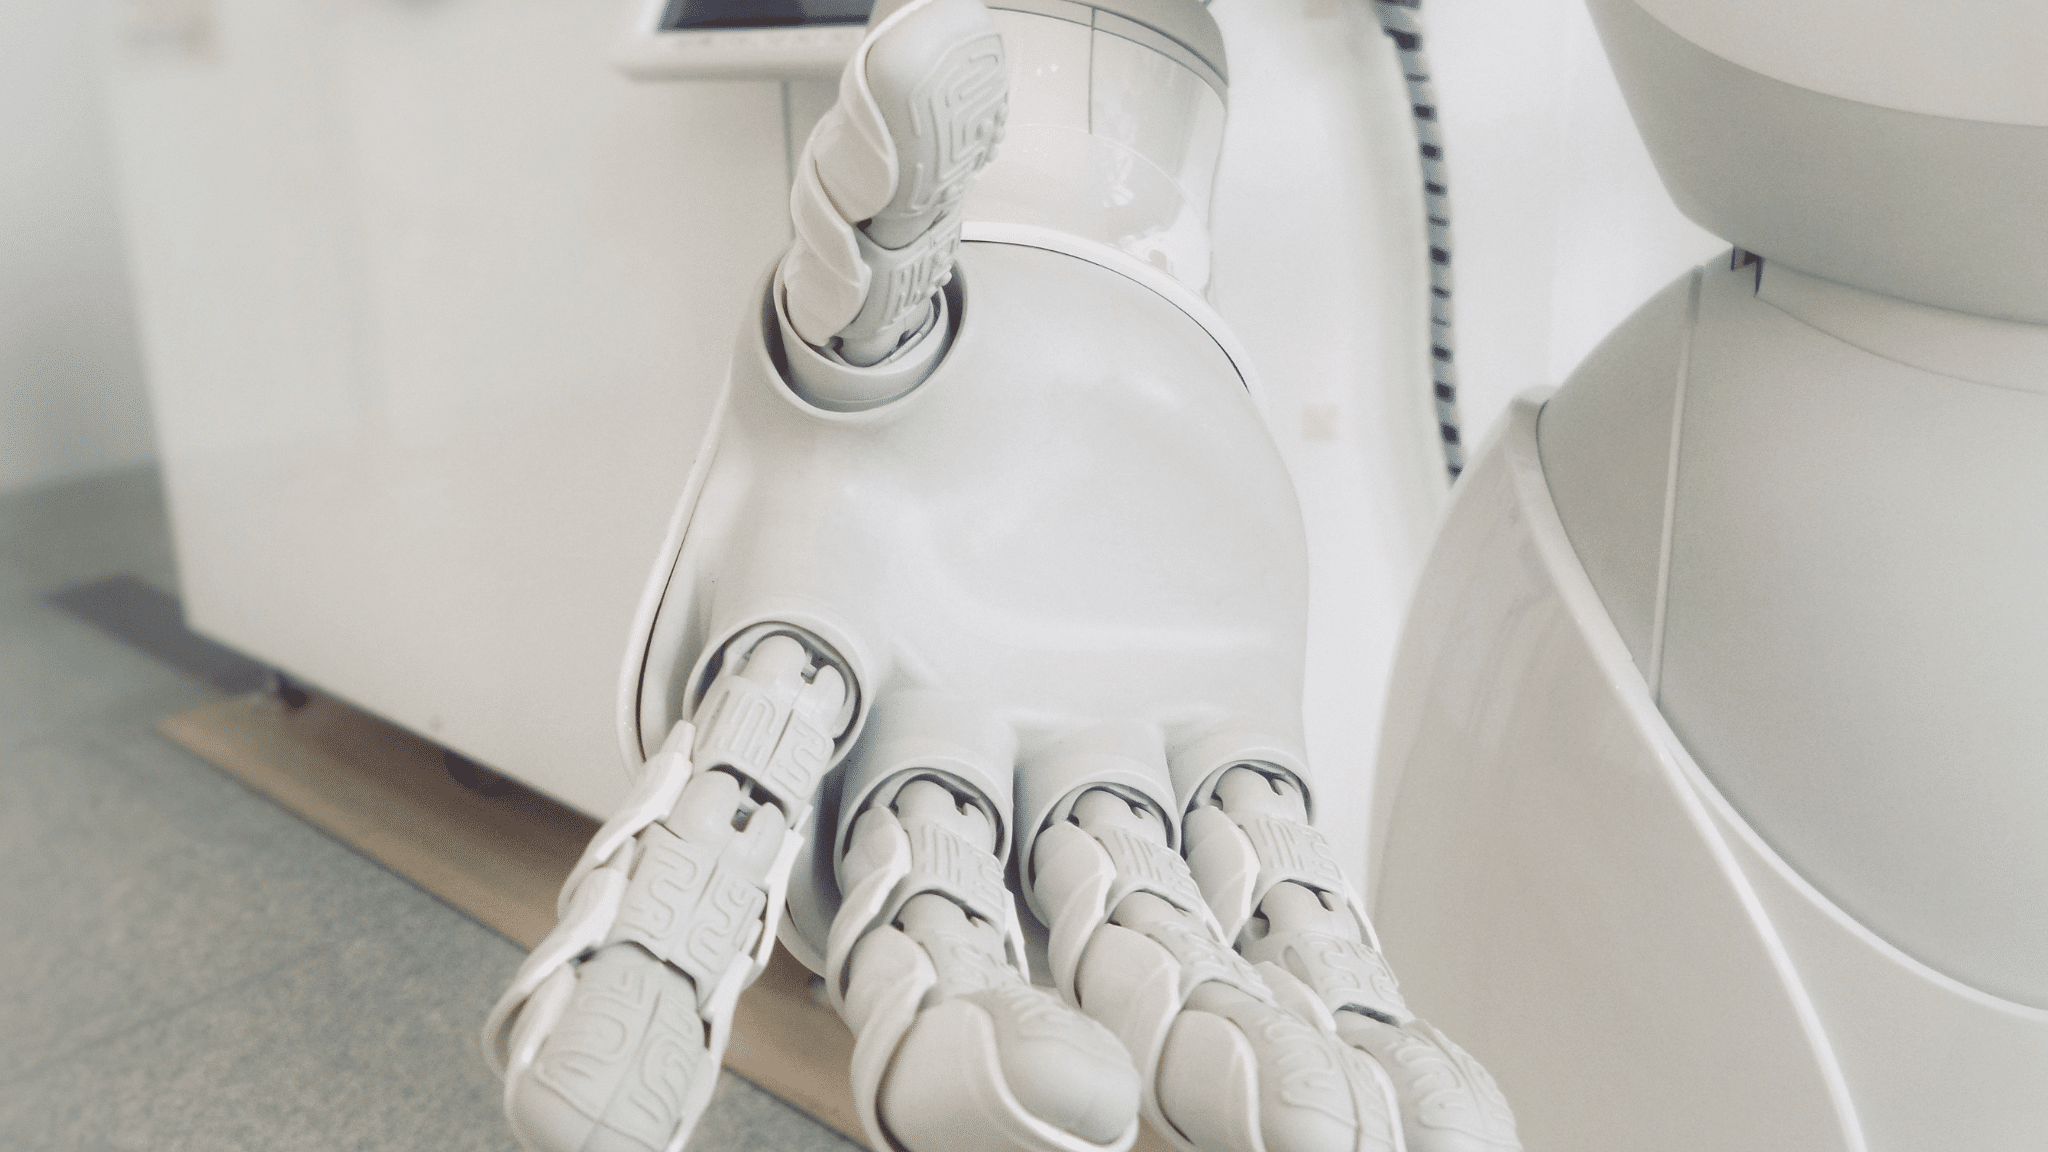 Ici, est mis en avant une main d'un robot de dernière technologie. Cette image a pour but d'illustrer notre article de blog : L’IA générative au cœur des stratégies marketing.